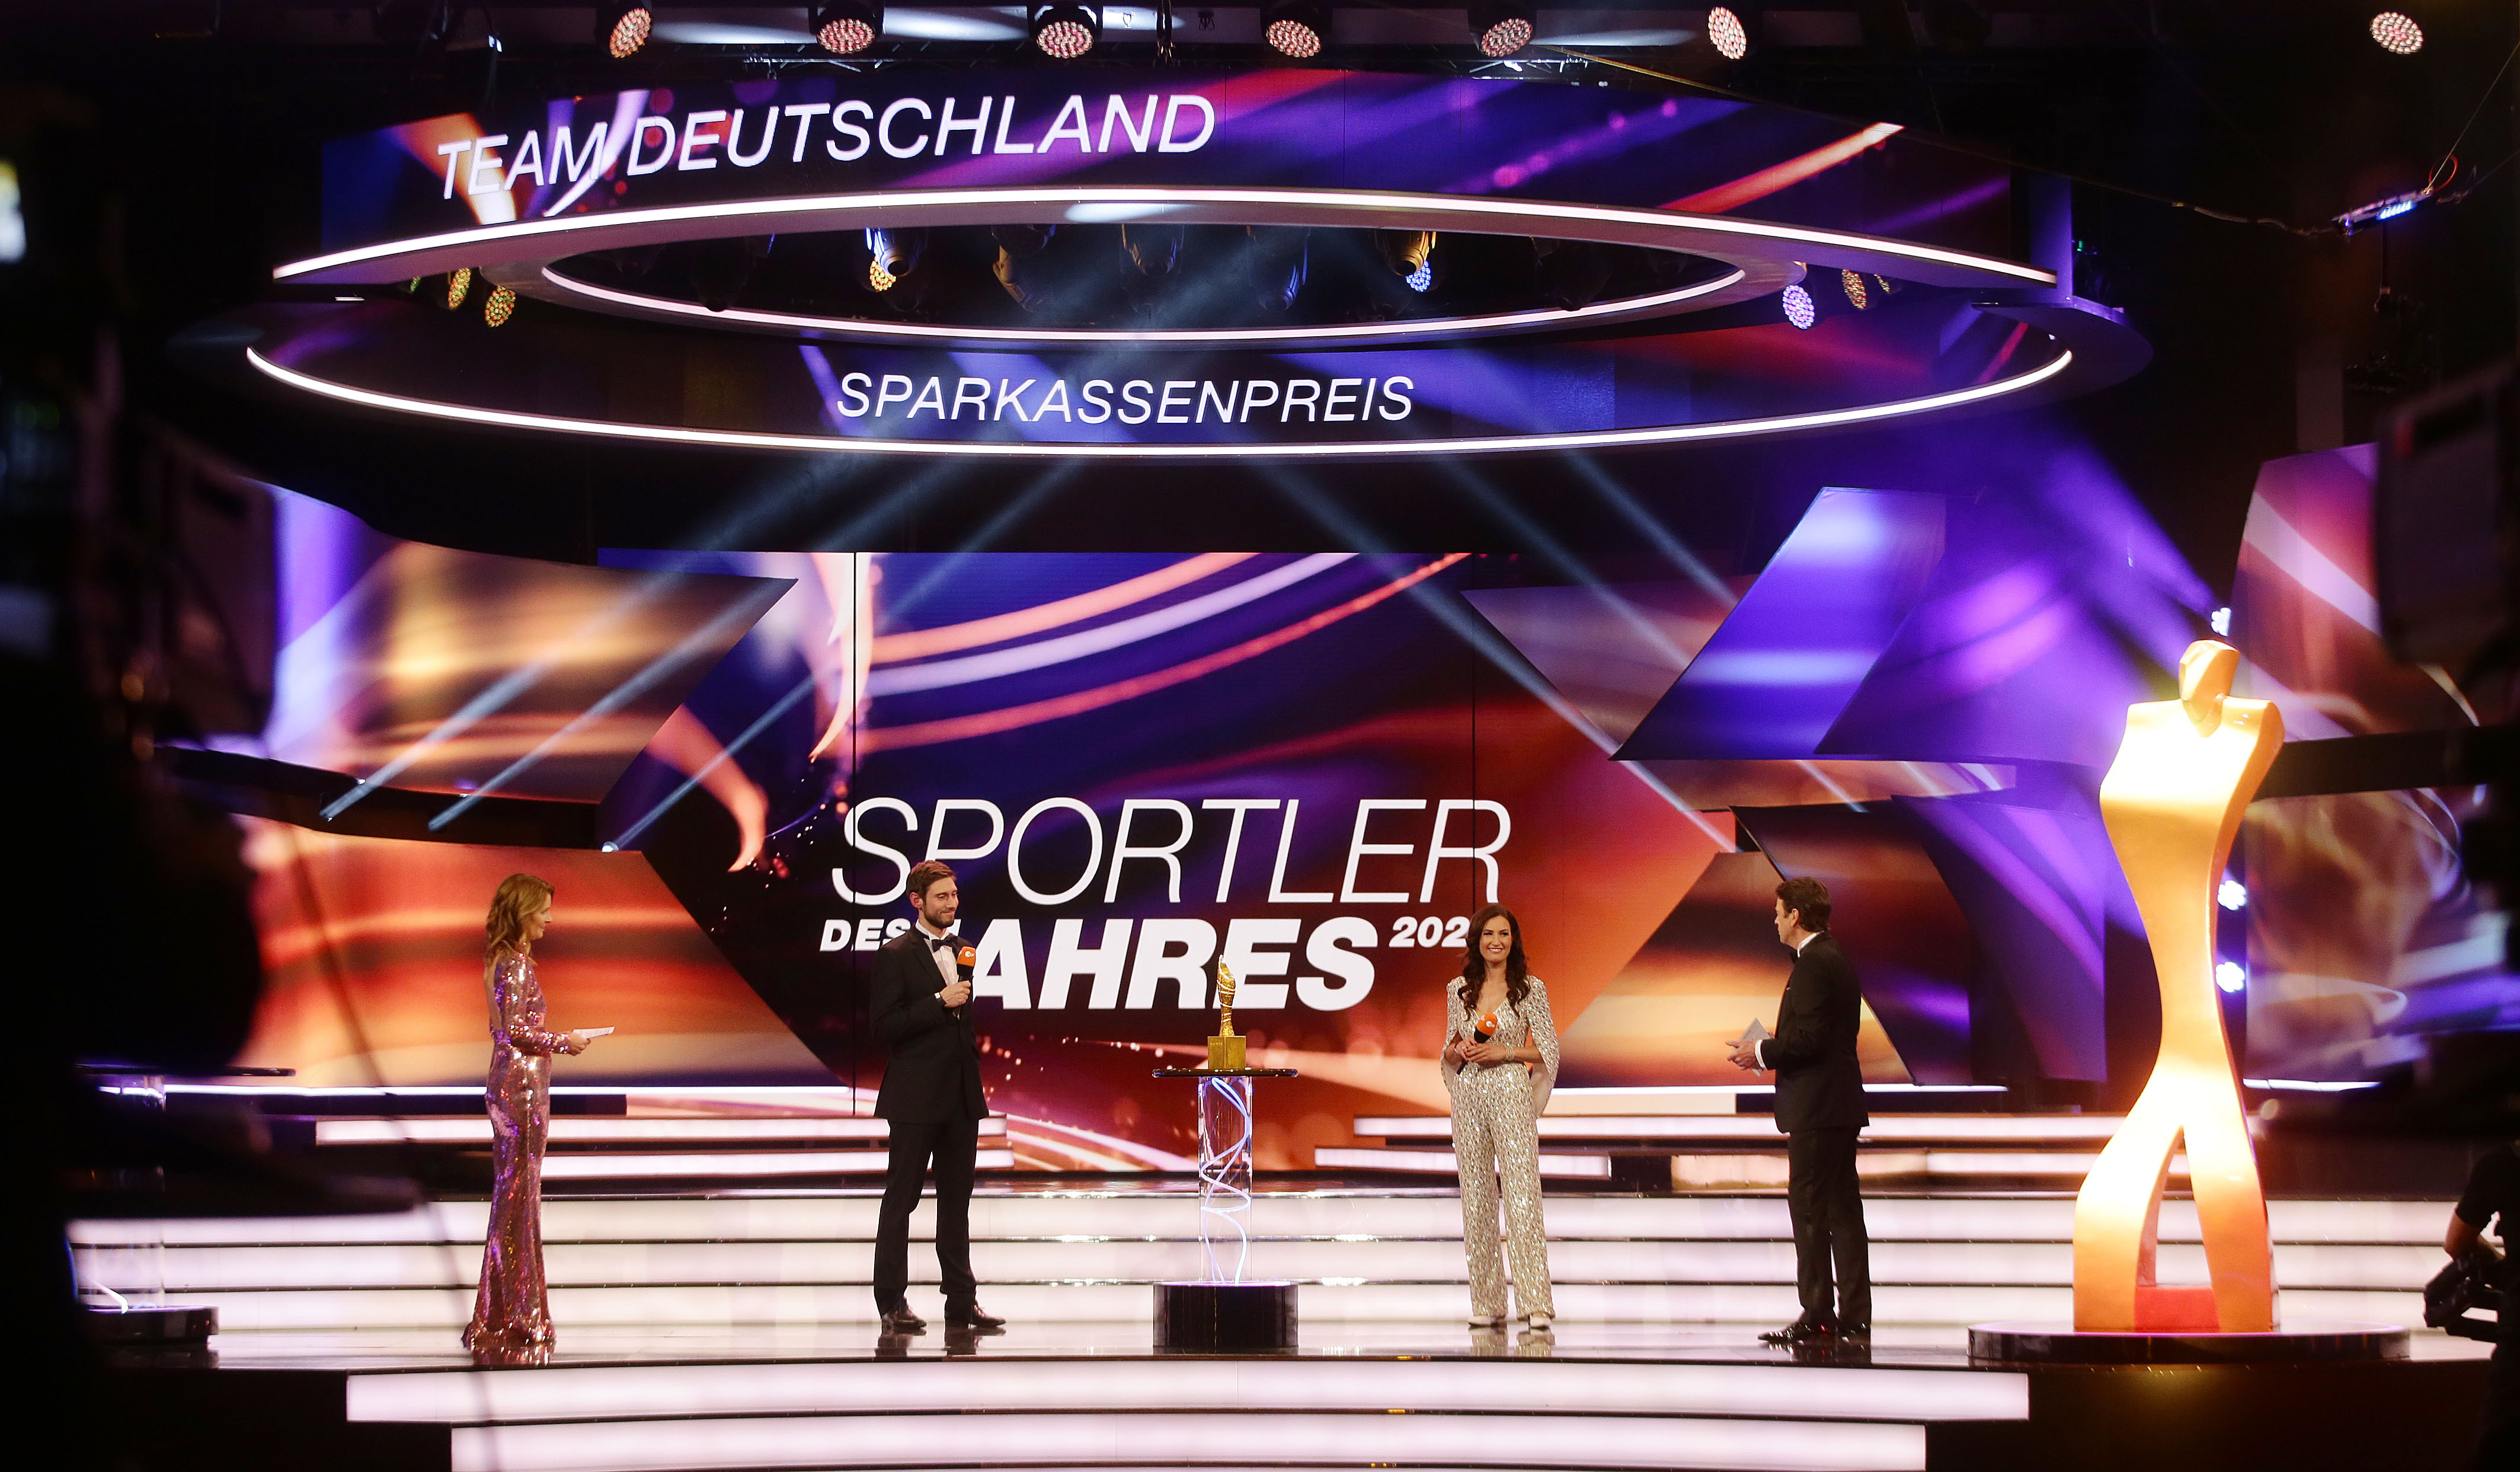 Sportlerehrung 2020 Sparkassenpreis | Foto: picture alliance / Pressefoto Bauman/Hansi Britsch / Hansjürgen Britsch